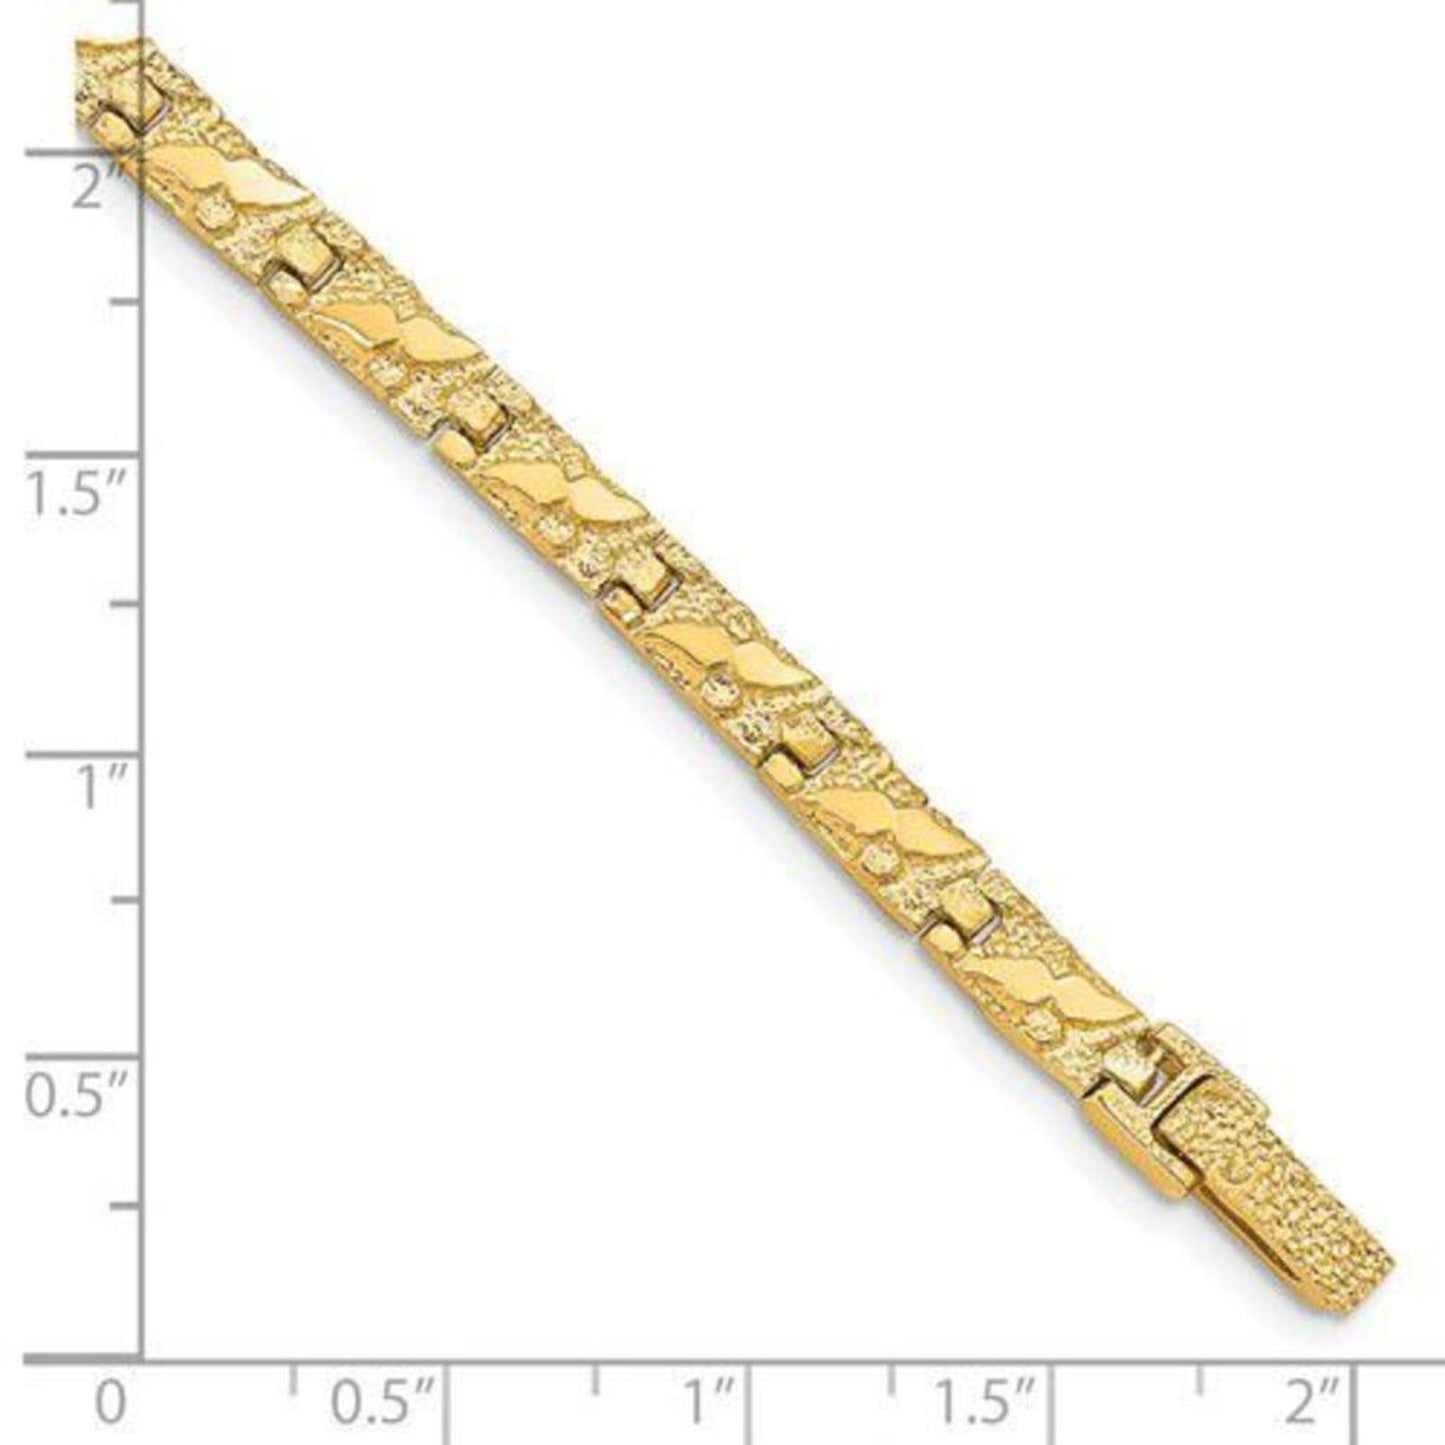 New 14k Gold 5.0mm wide 7 inch Nugget Bracelet